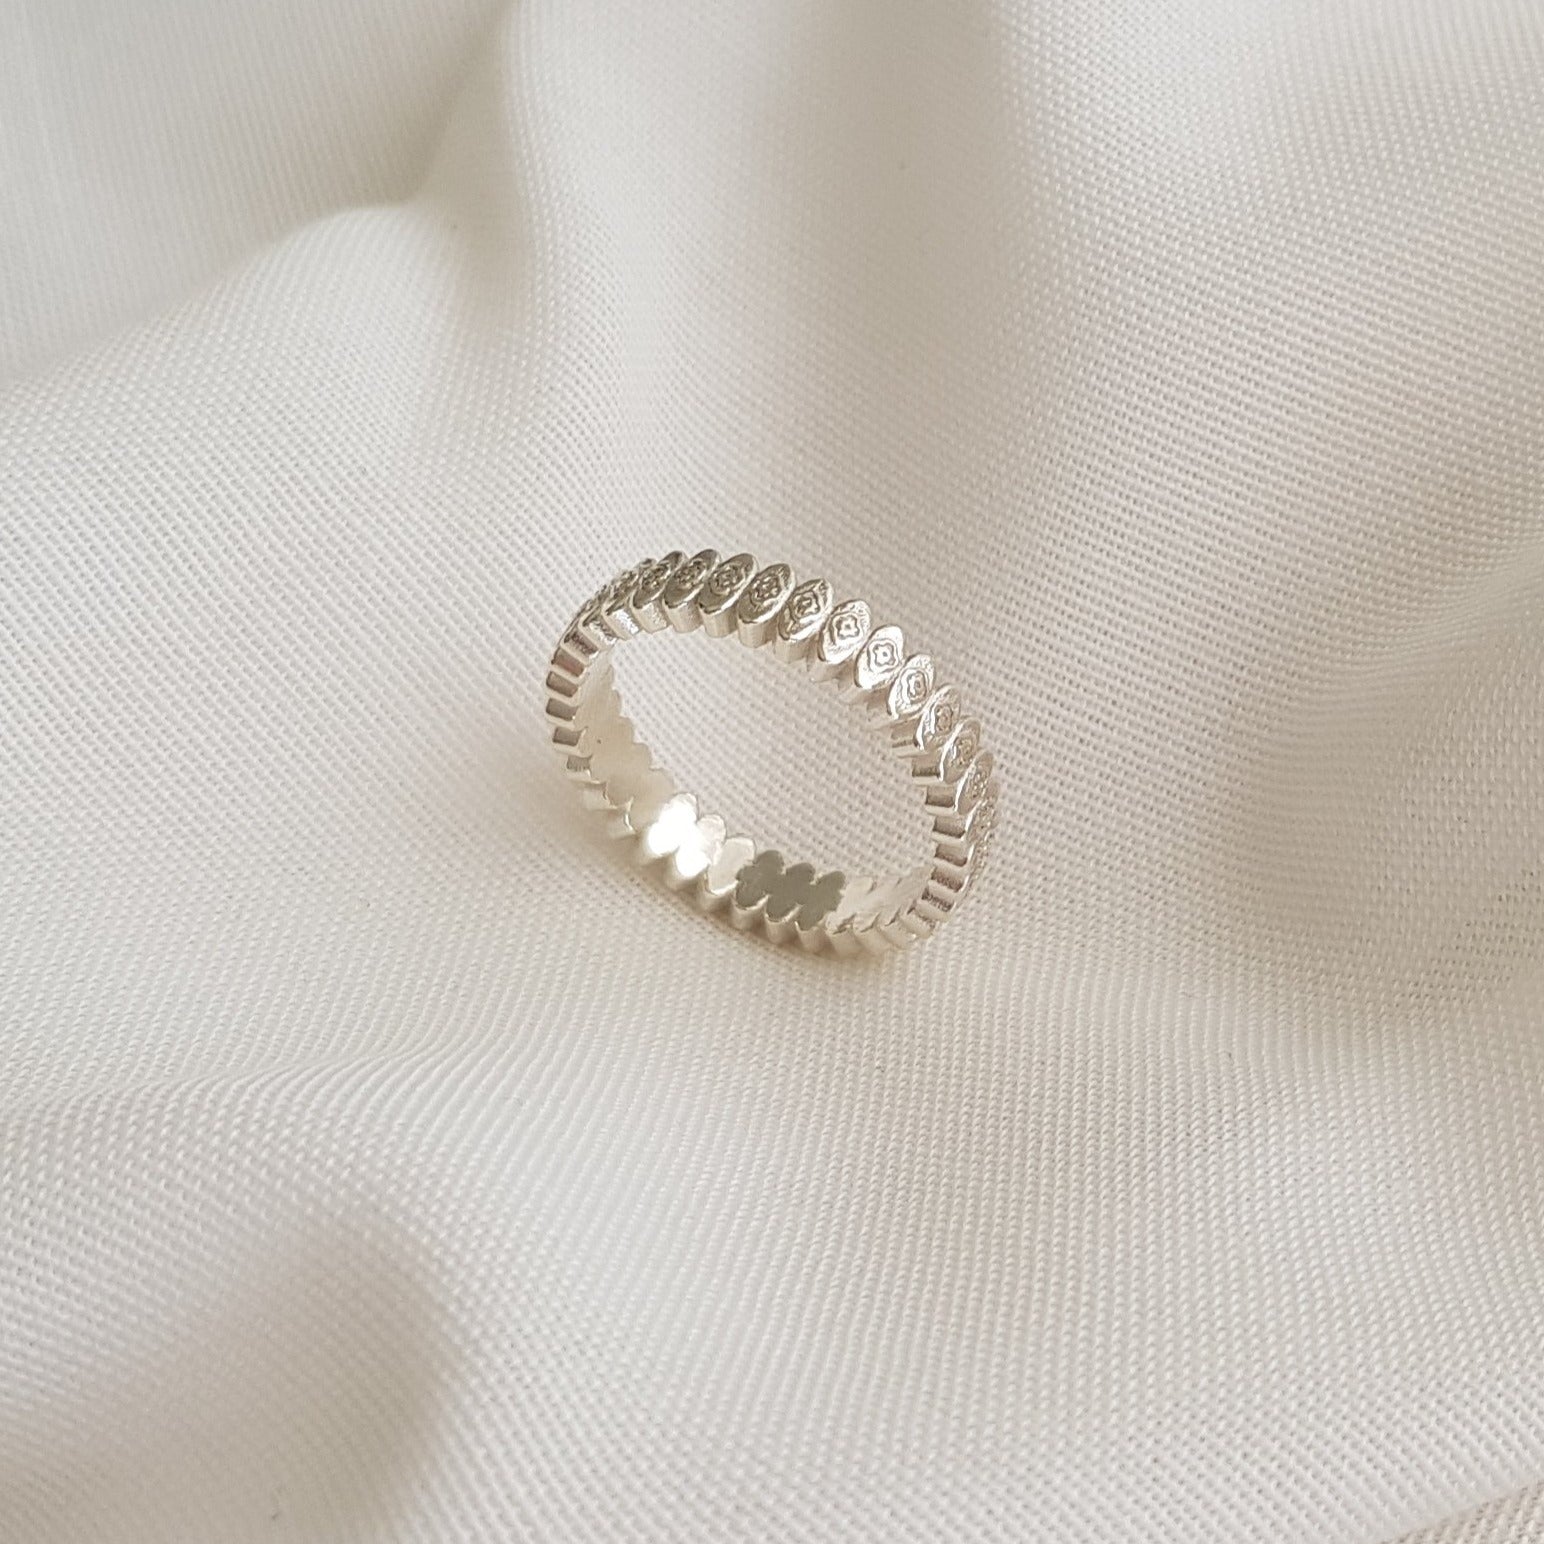 Unique Texture Ring Design